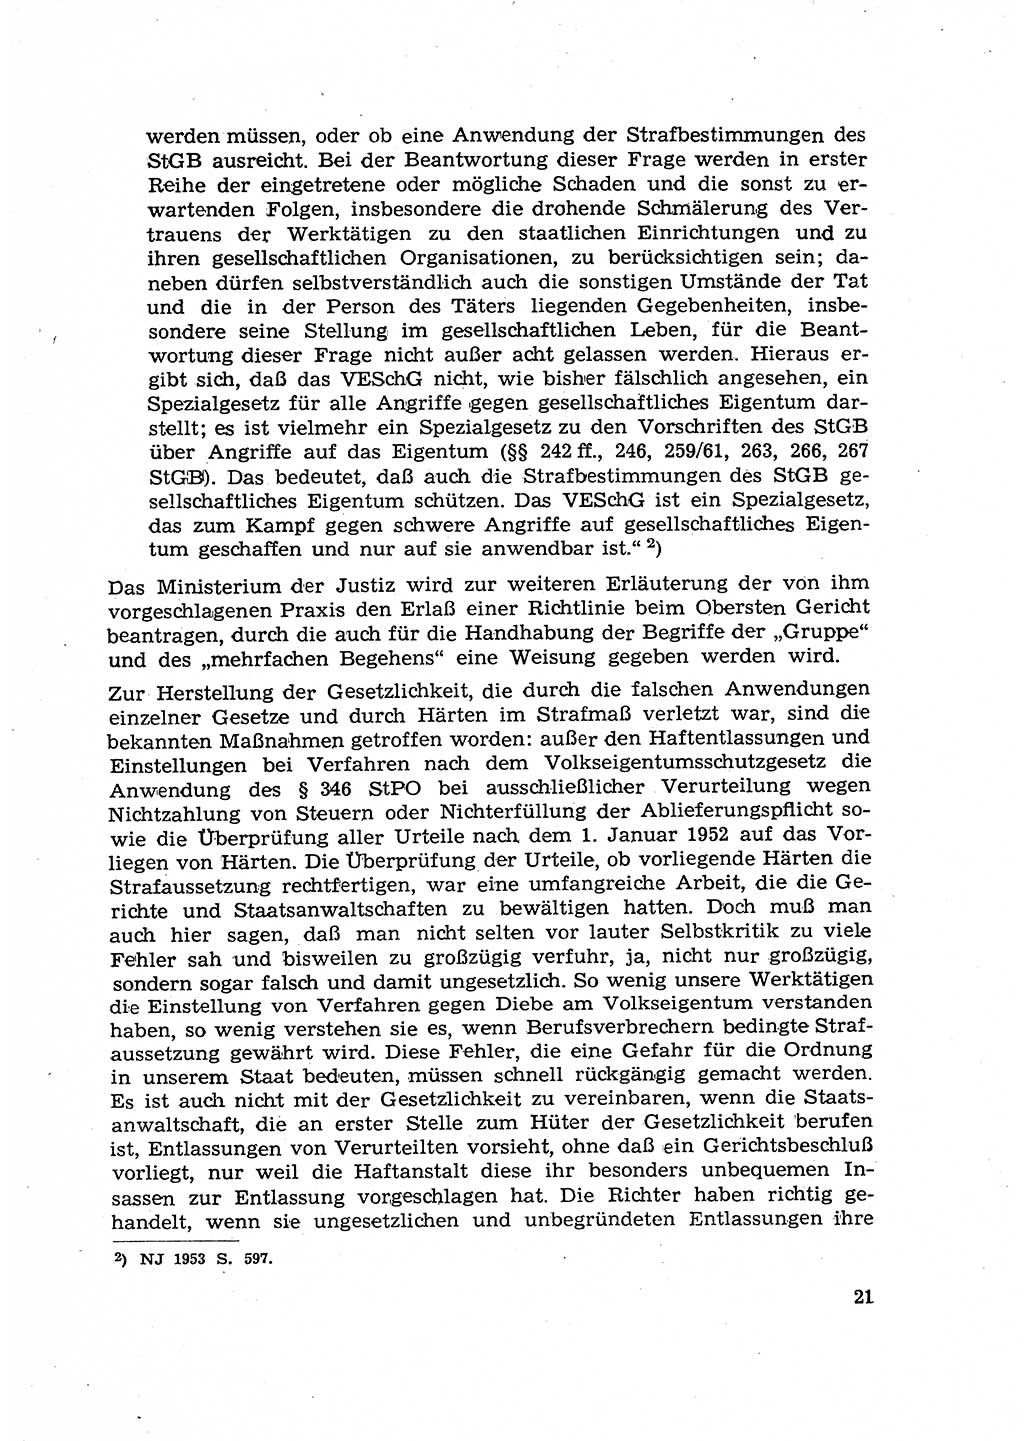 Hauptaufgaben der Justiz [Deutsche Demokratische Republik (DDR)] bei der Durchführung des neuen Kurses 1953, Seite 21 (Hpt.-Aufg. J. DDR 1953, S. 21)